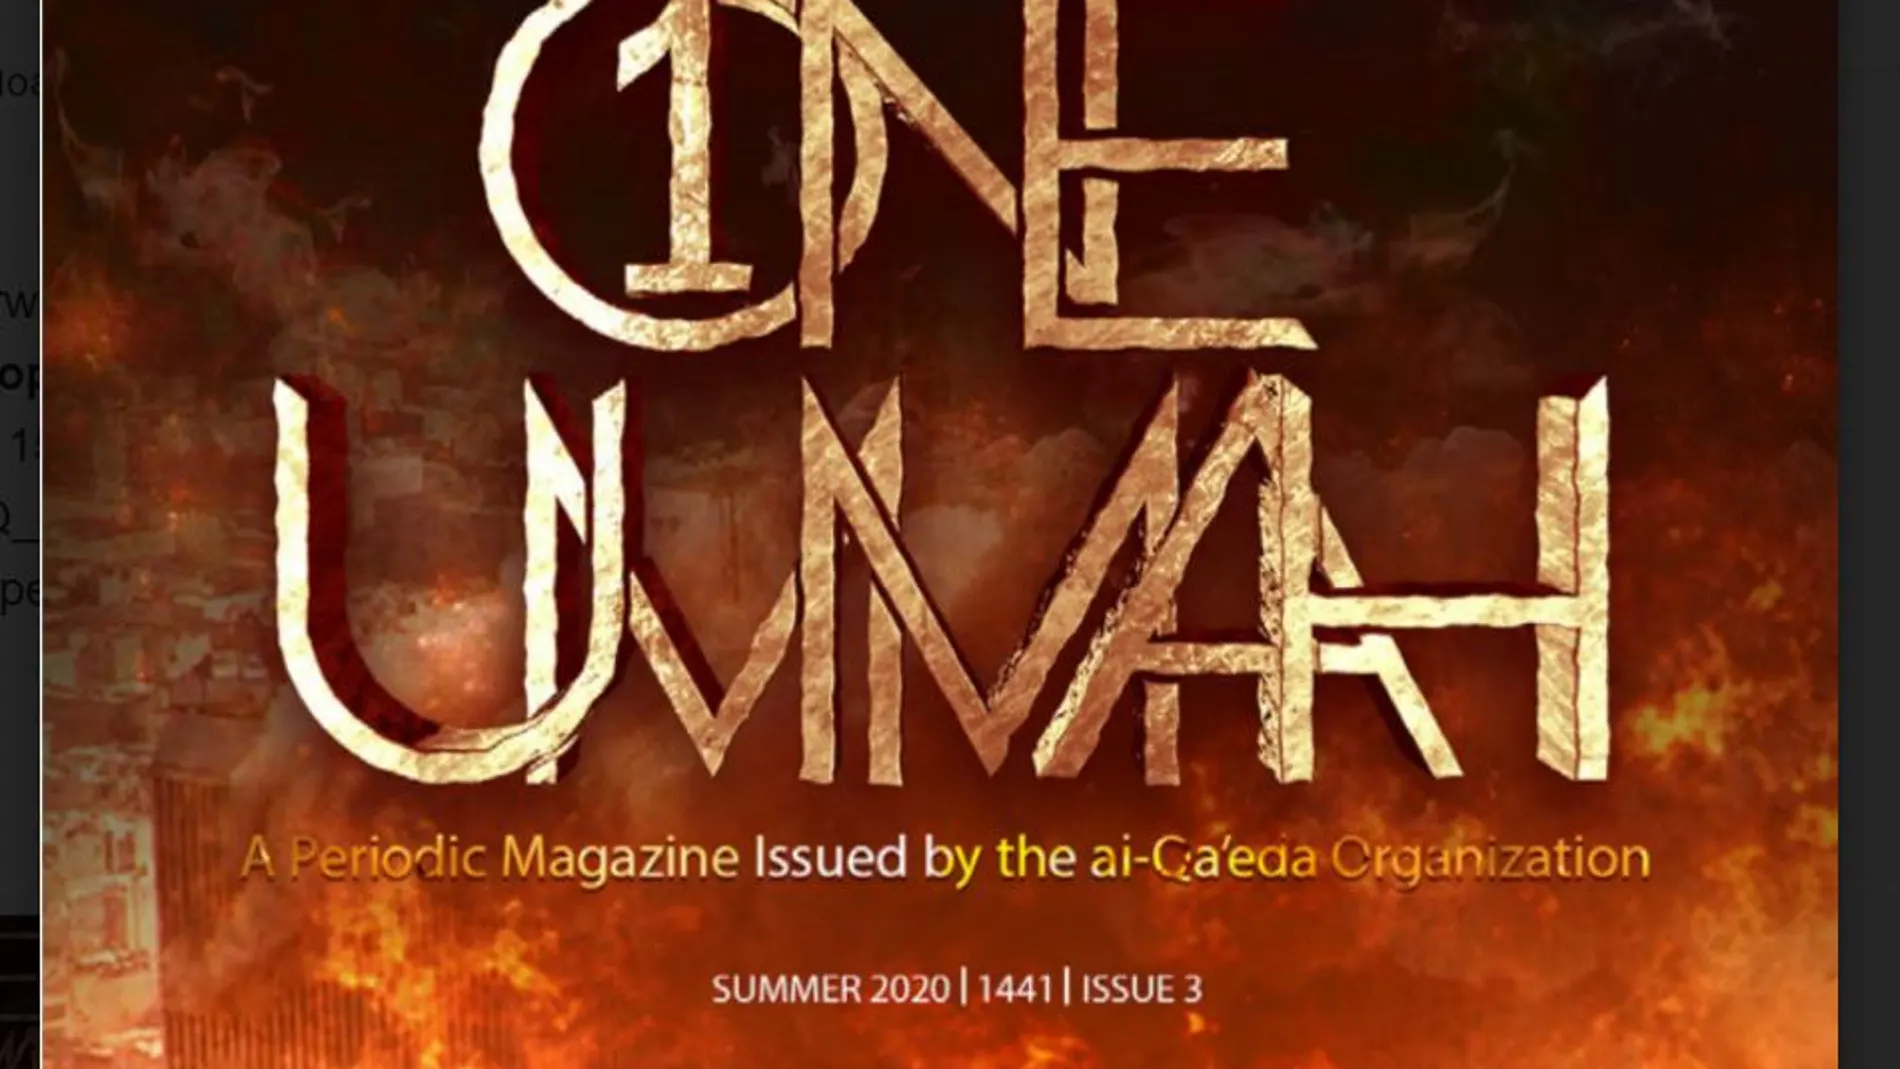 Portada cde la revista de Al Qaeda en la que se narra como se gestó el 11-S